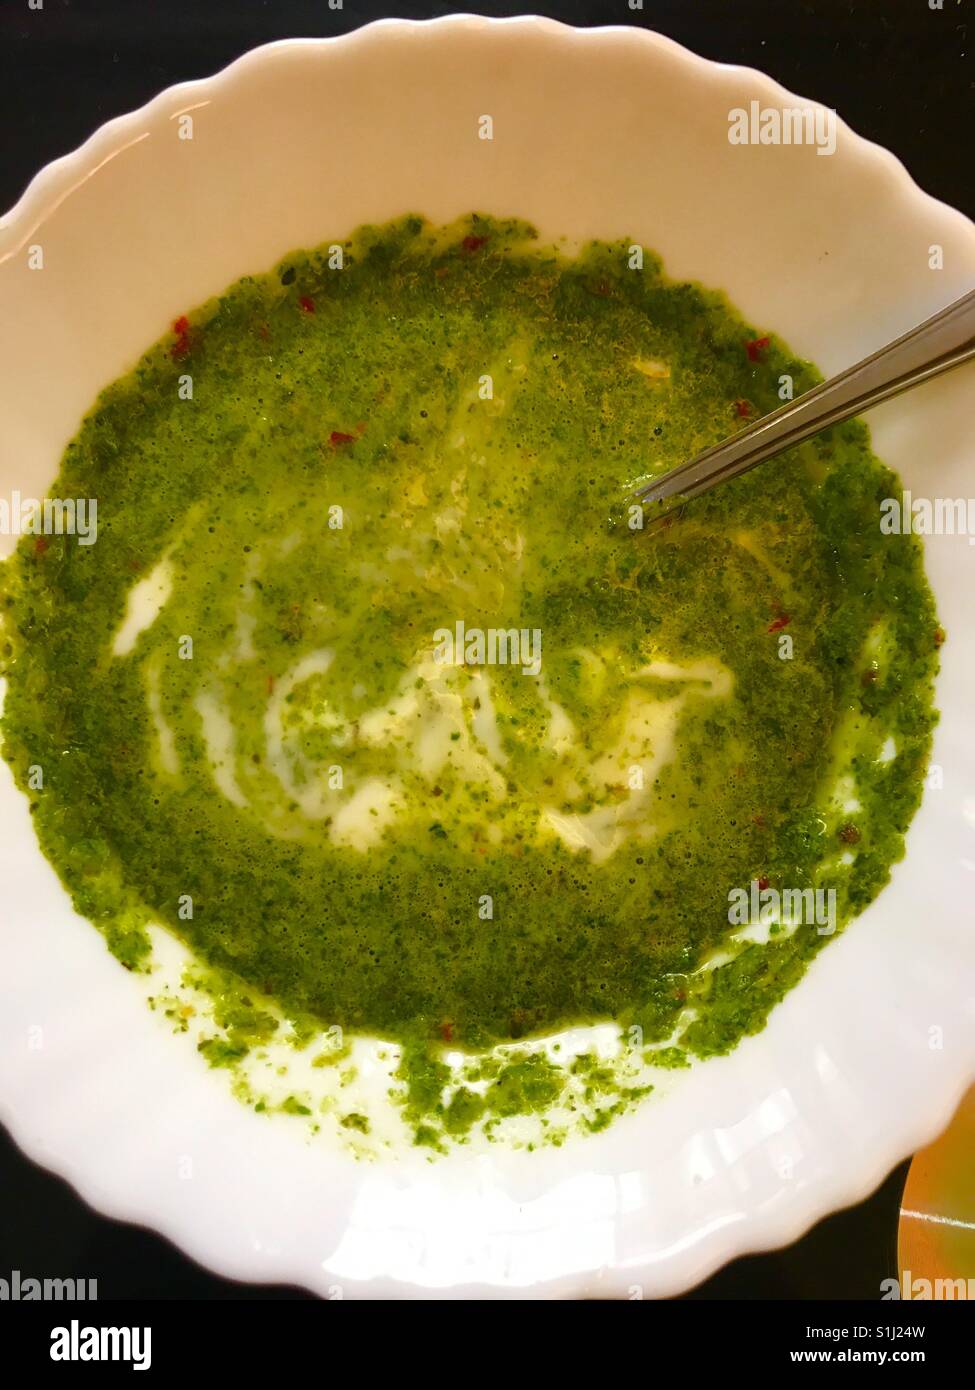 Grüner Teich von Minze, Koriander und Chili mit Joghurt gemischt und Kniff mit Salz & Pfeffer Stockfoto